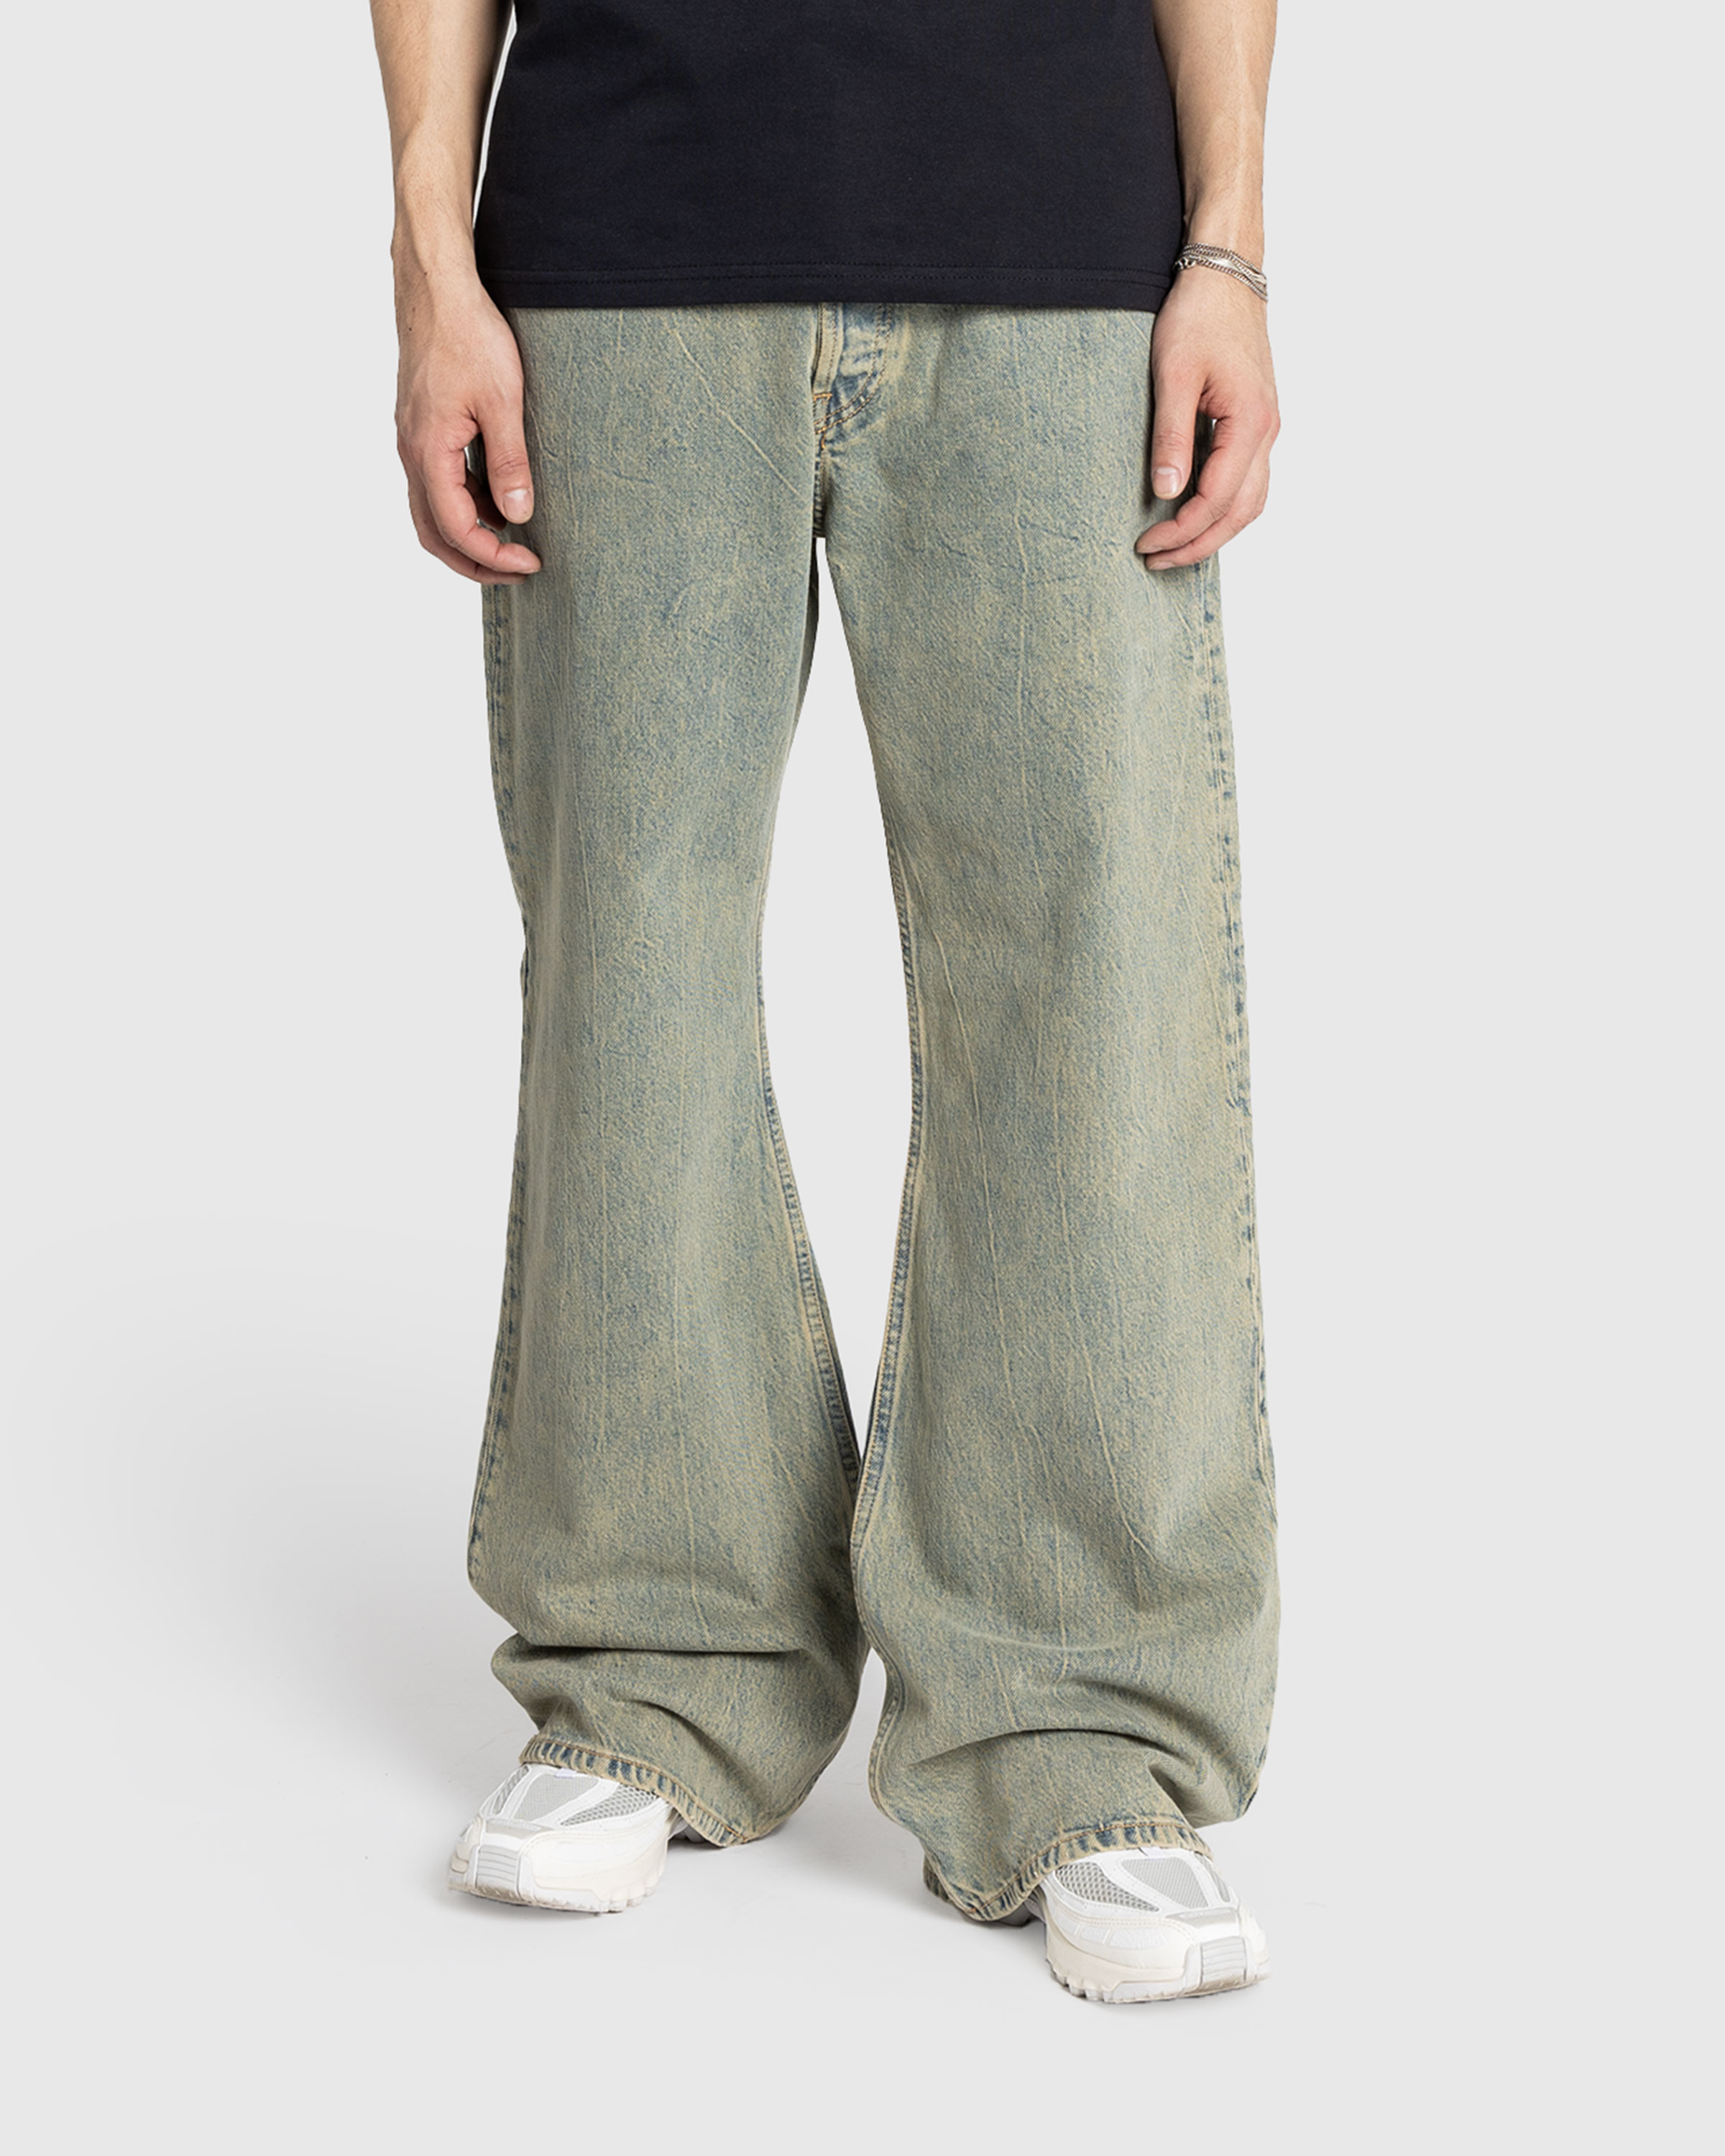 Acne Studios – Loose Fit Jeans 2021M Blue/Beige - Pants - Blue - Image 2